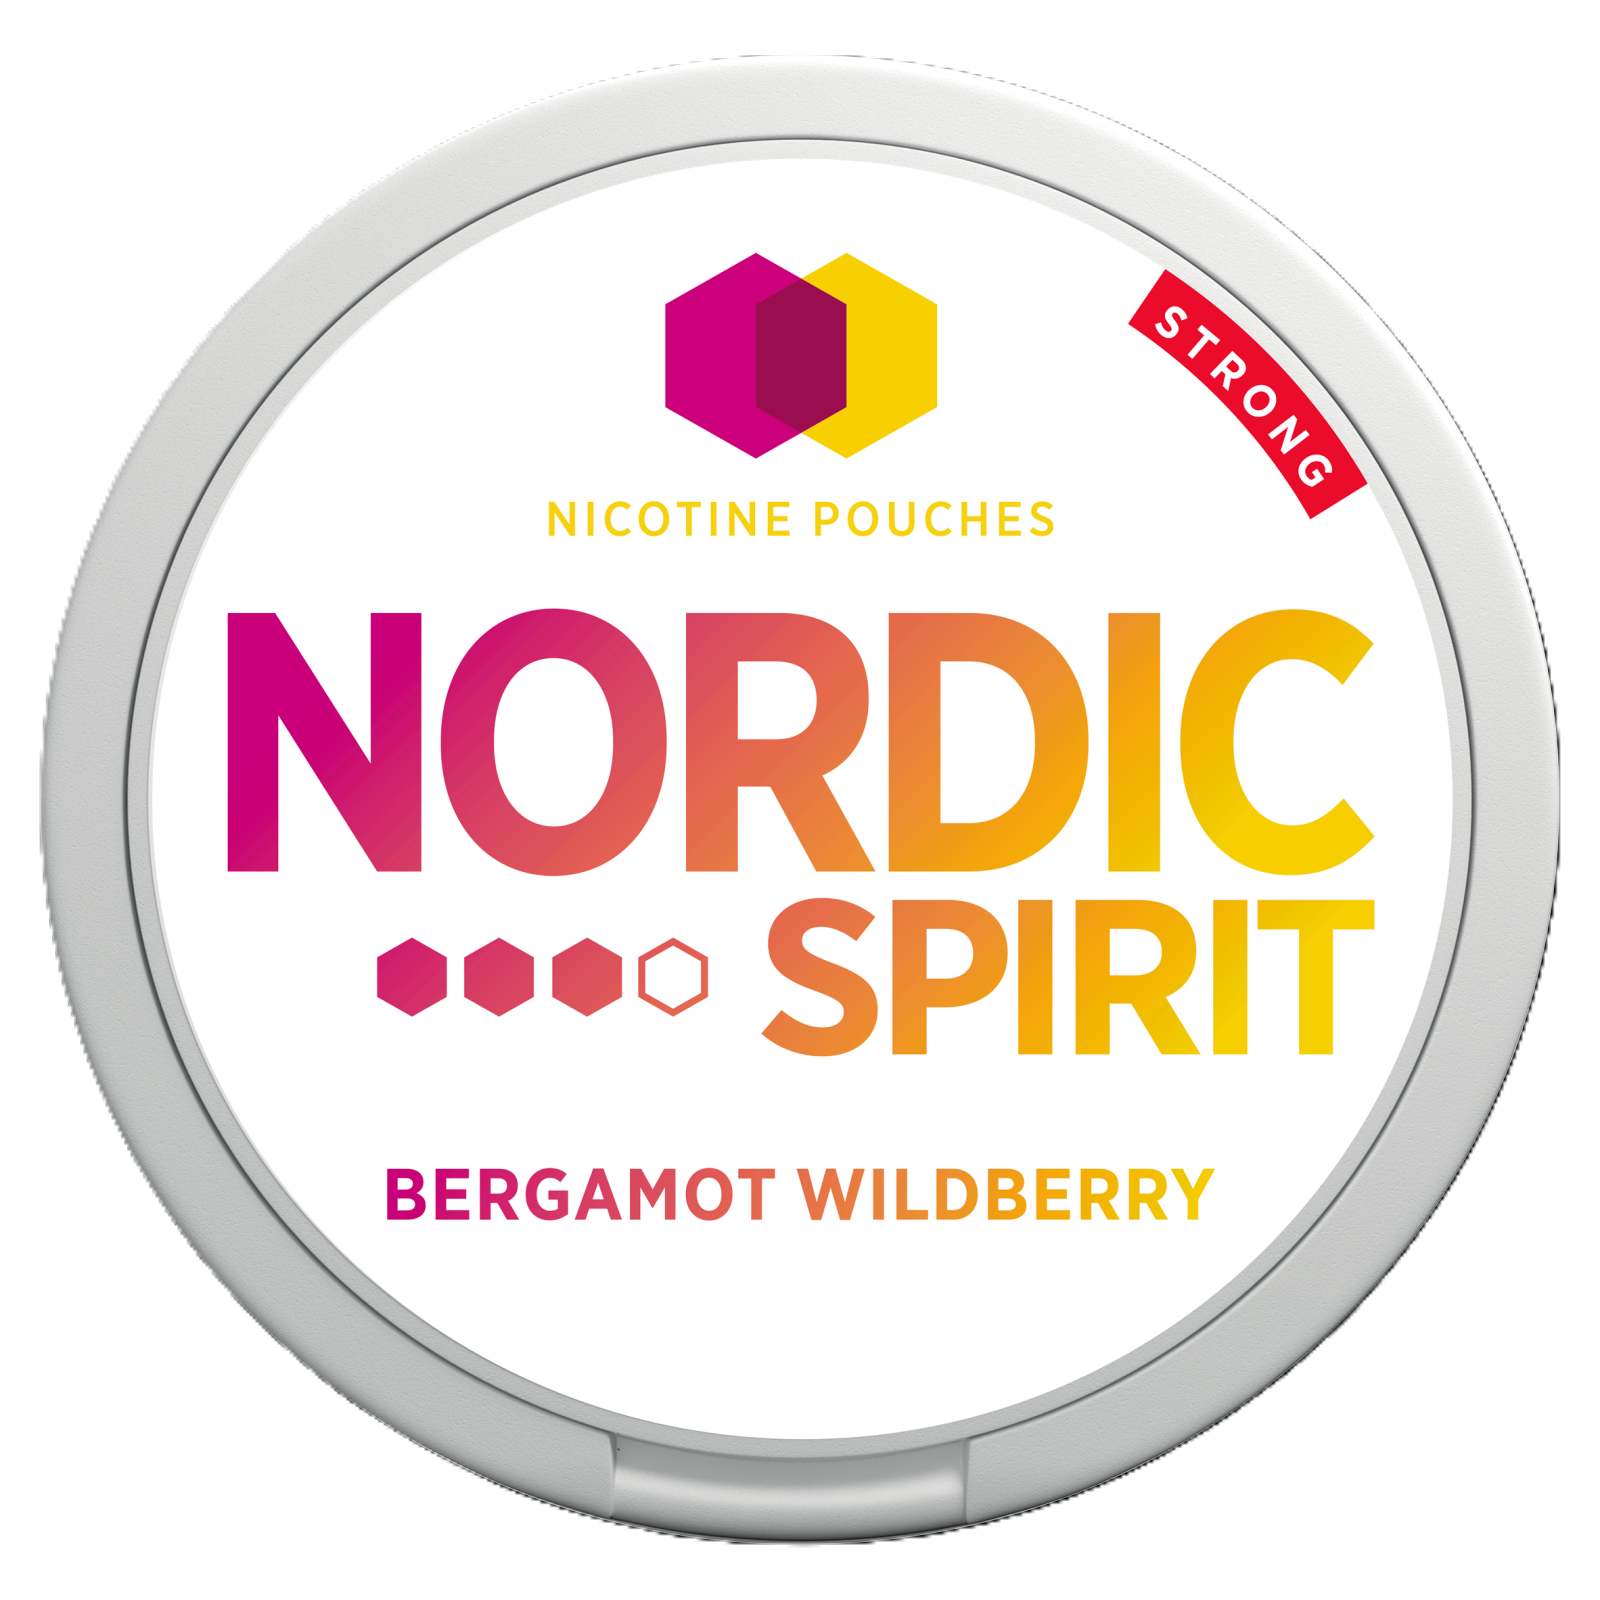 Nordic Spirit Bergamot Wildberry (9mg), 20s